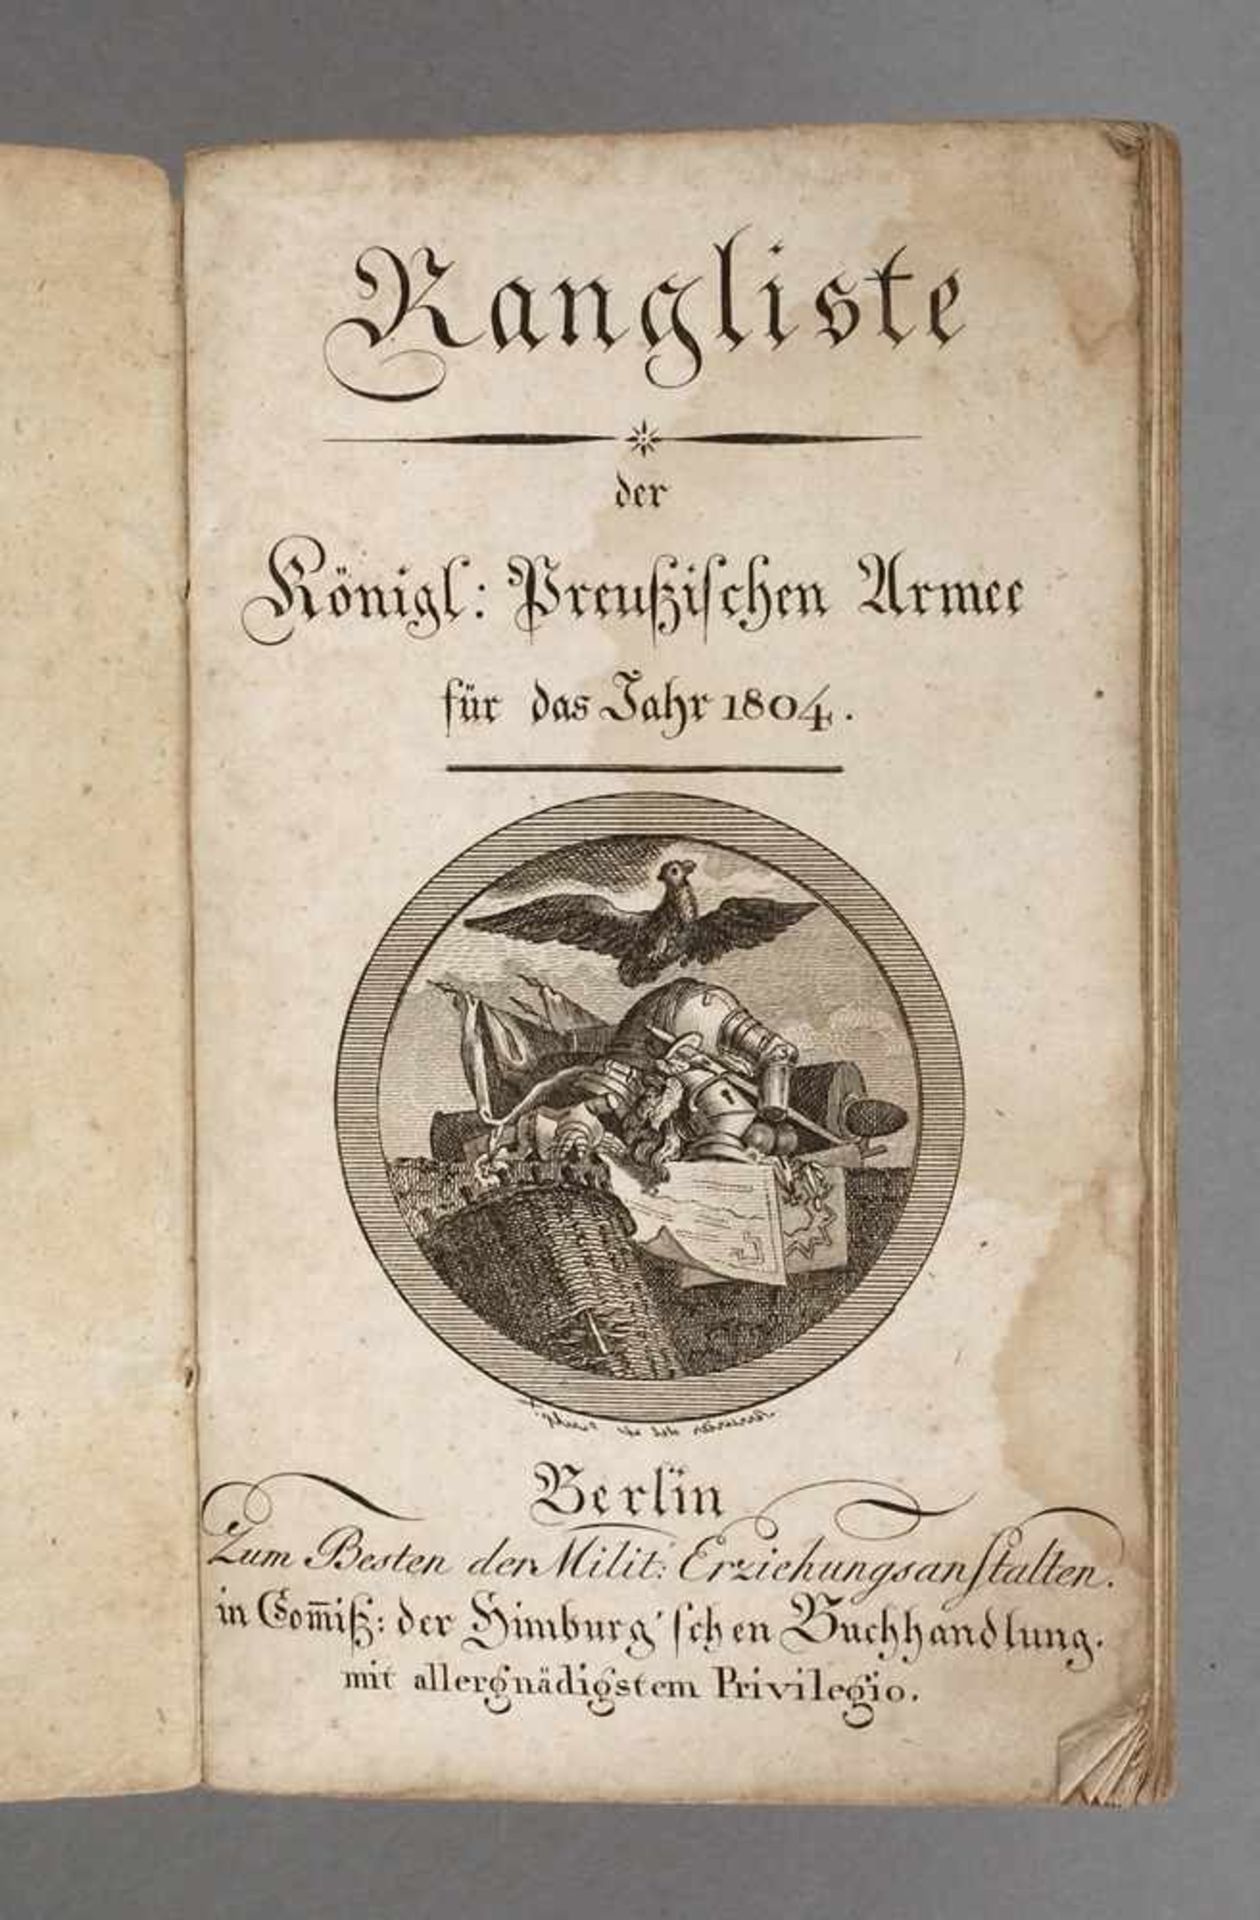 Rangliste der Königl. Preußischen Armeeauf das Jahr 1804, Berlin in Comiß. der Himburg'schen